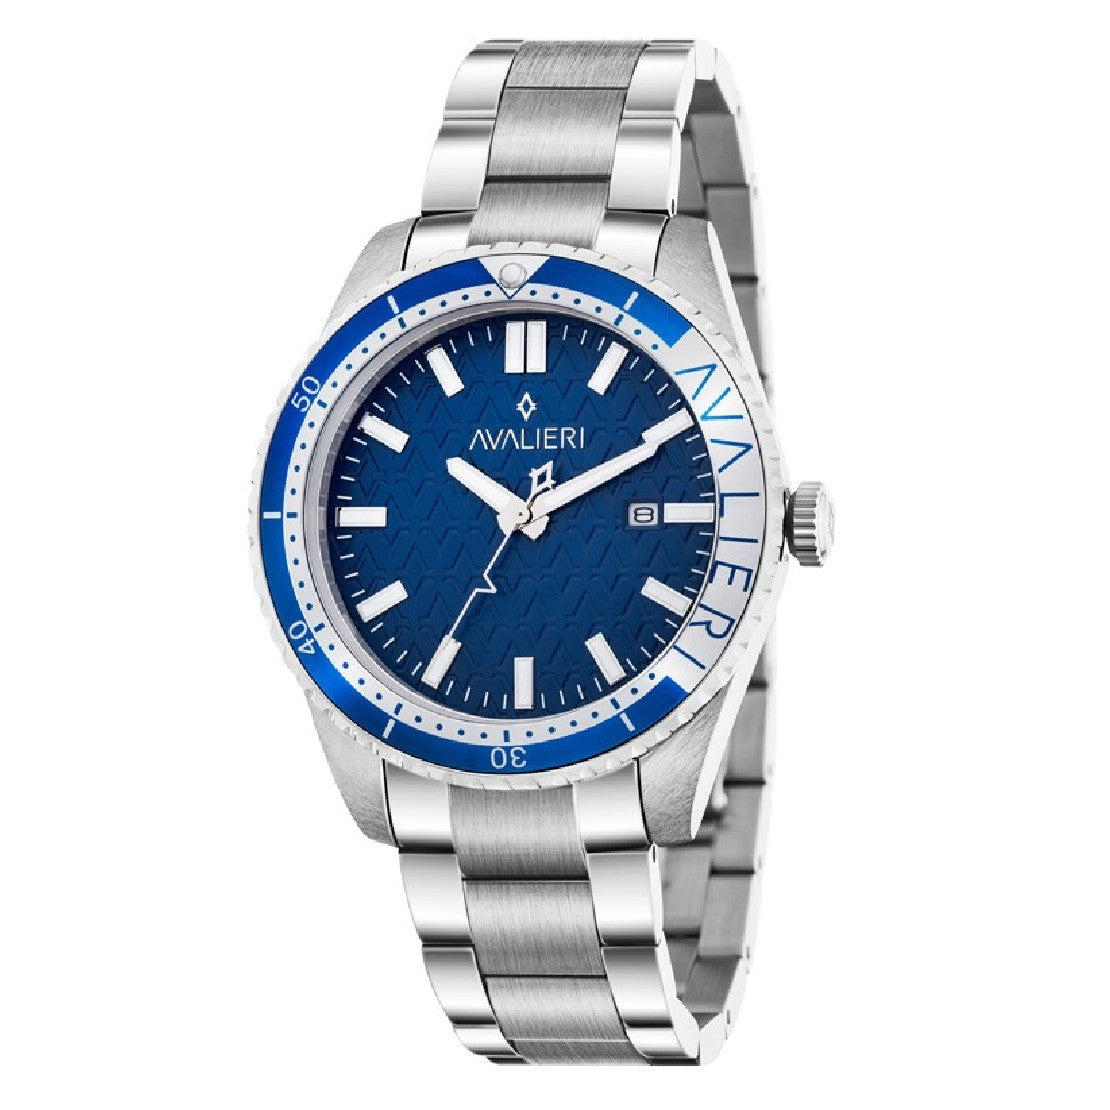 Avalieri Men's Quartz Blue Dial Watch - AV-2345B